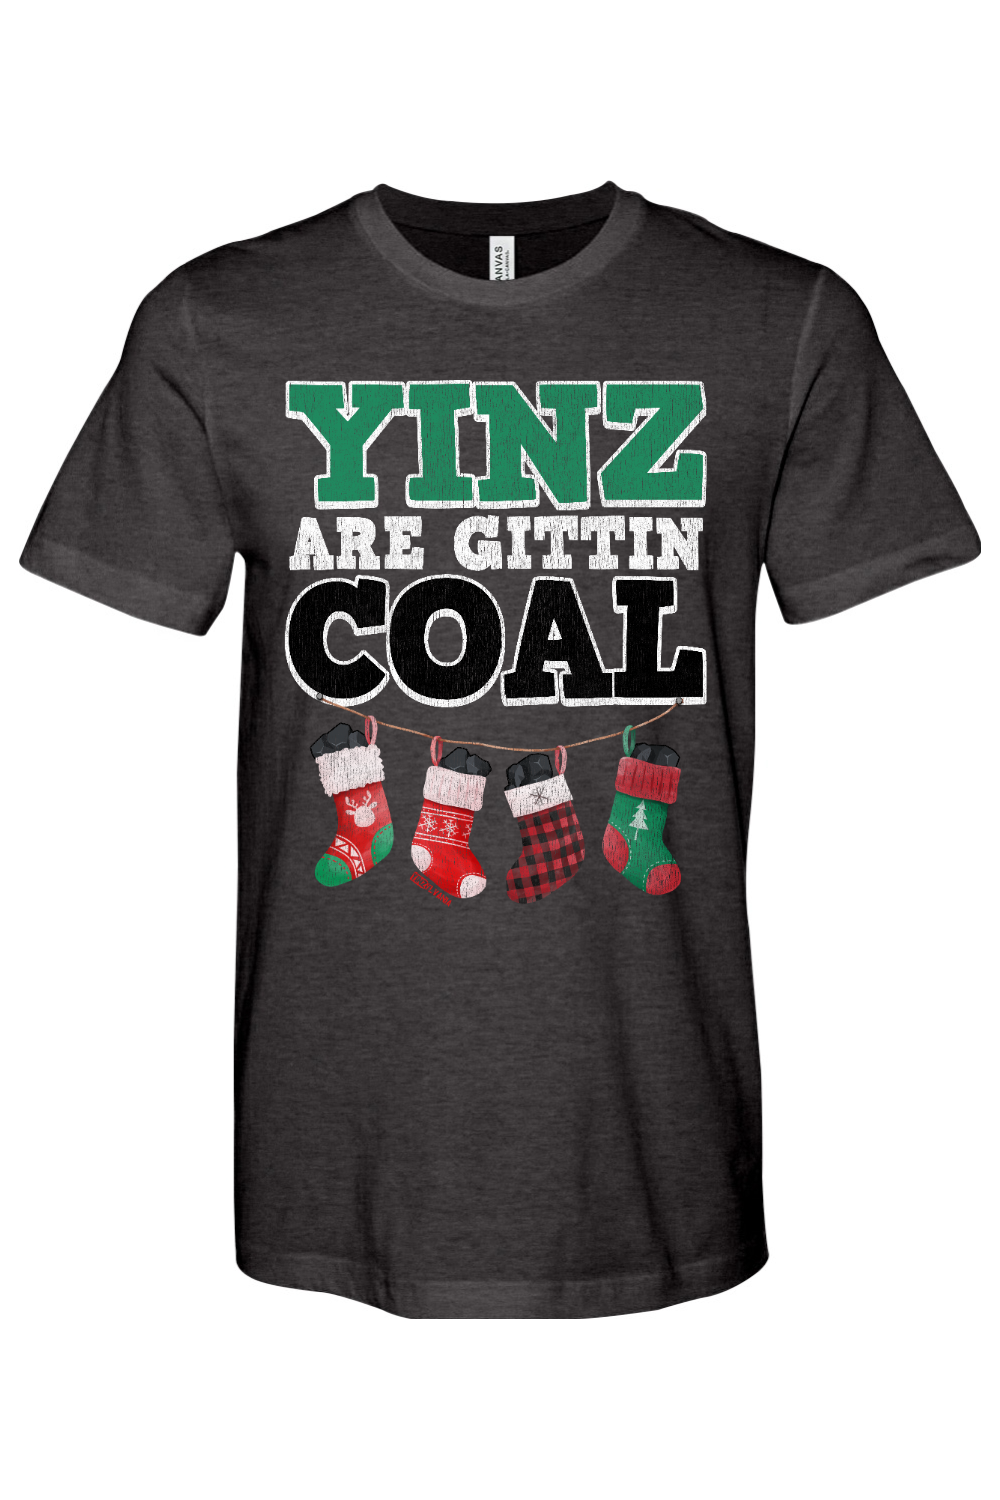 Yinz are Gittin Coal - Yinzylvania